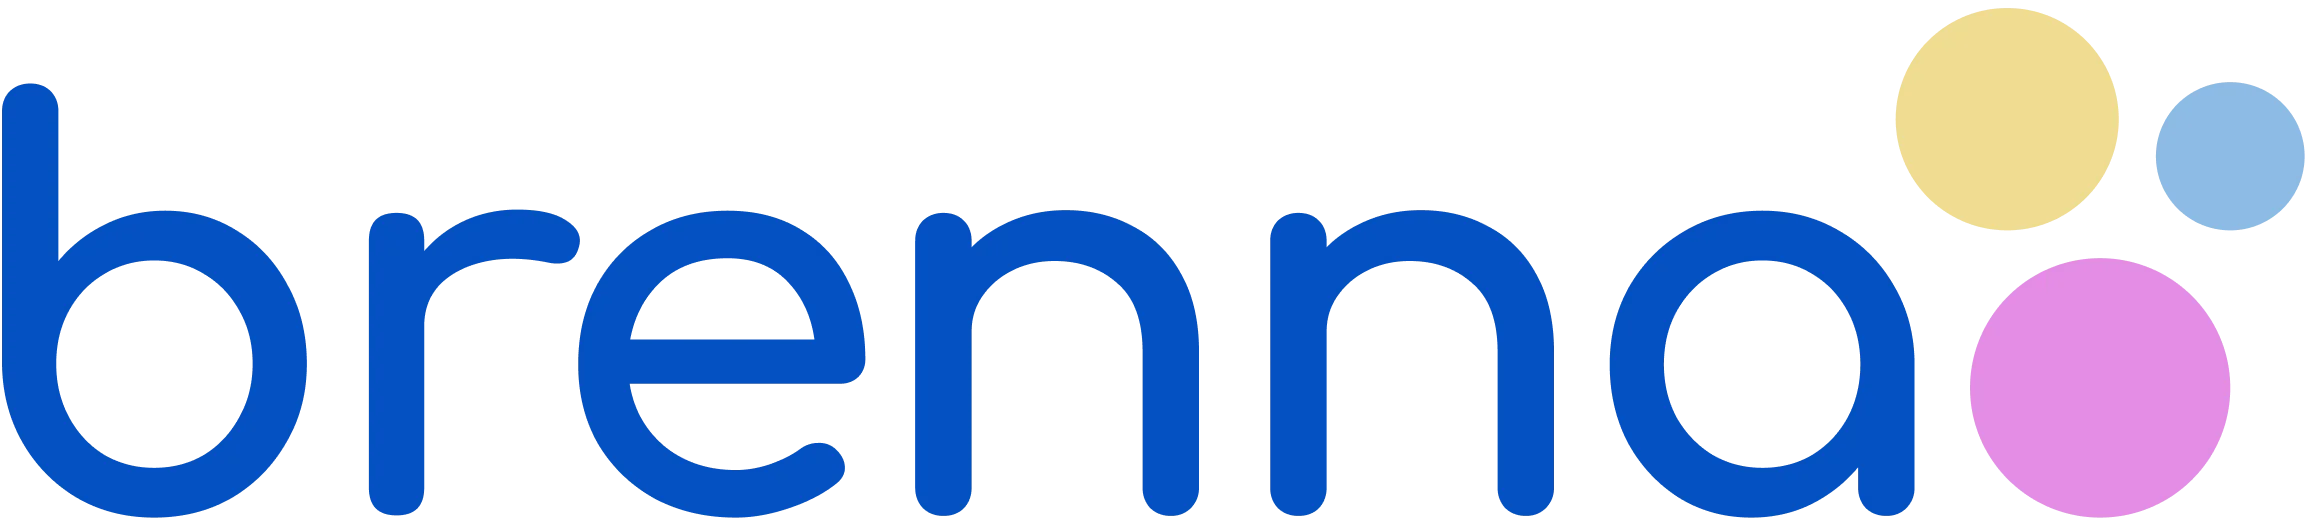 Brenna logo